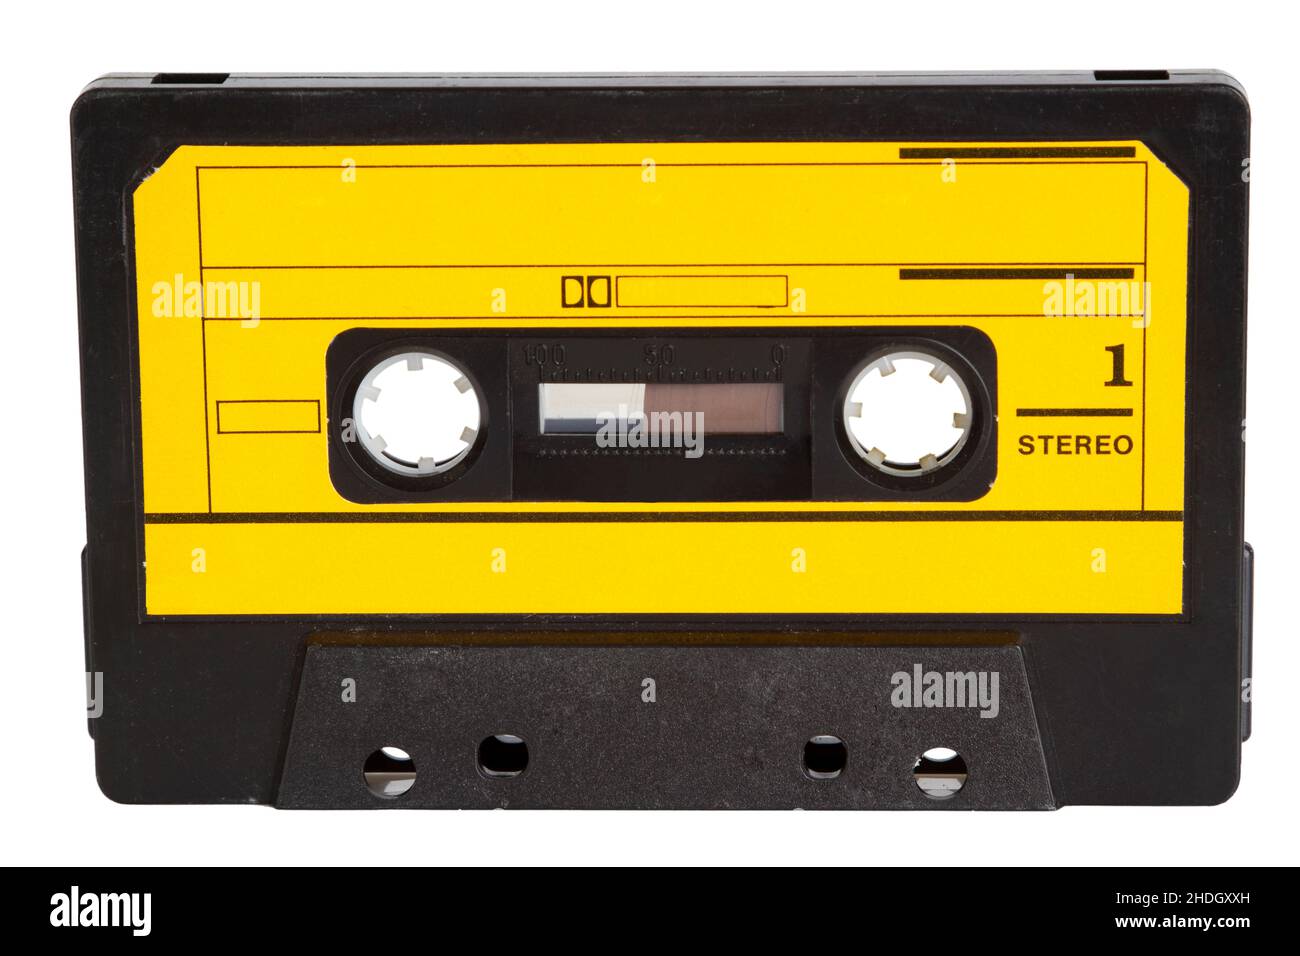 nastro, audiocassetta, cassetta, cassette, audiocassette Foto stock - Alamy